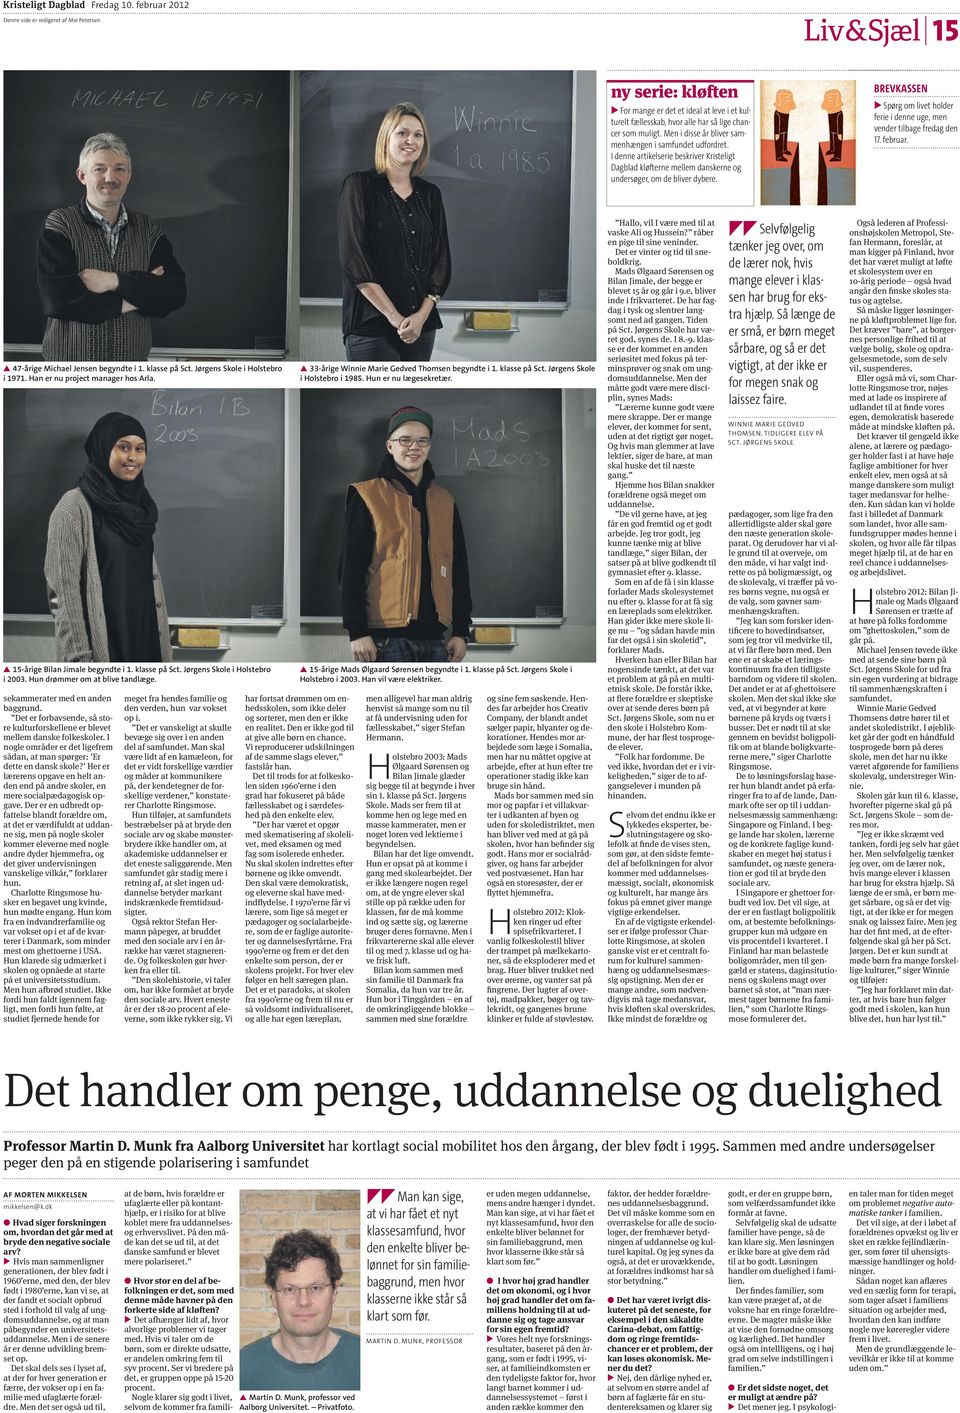 Men i disse år bliver sammenhængen i samfundet uddret. I denne artikelserie beskriver Kristeligt Dagblad kløfterne mellem danskerne undersøger, om de bliver dybere.